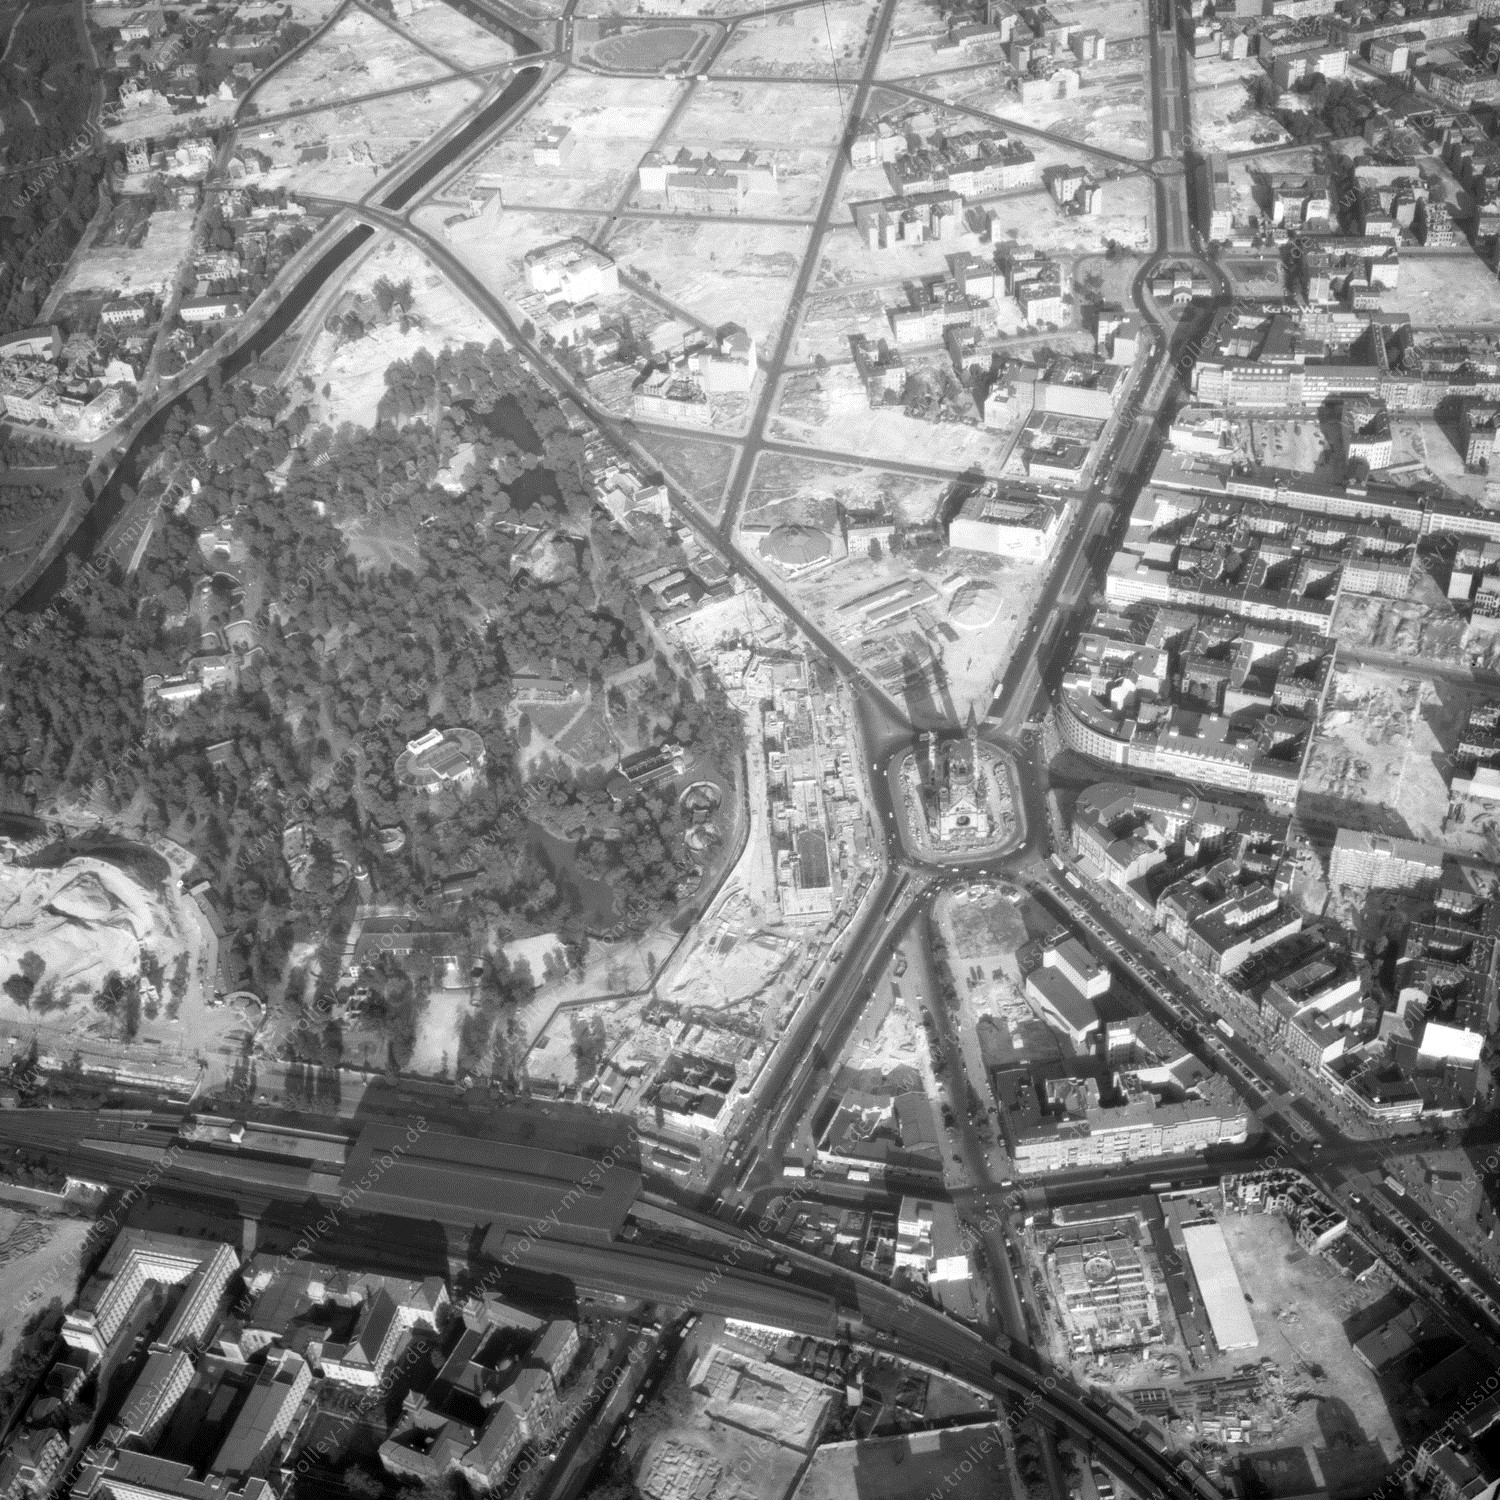 Alte Fotos und Luftbilder von Berlin - Luftbildaufnahme Nr. 13 - Historische Luftaufnahmen von West-Berlin aus dem Jahr 1954 - Flugstrecke Echo